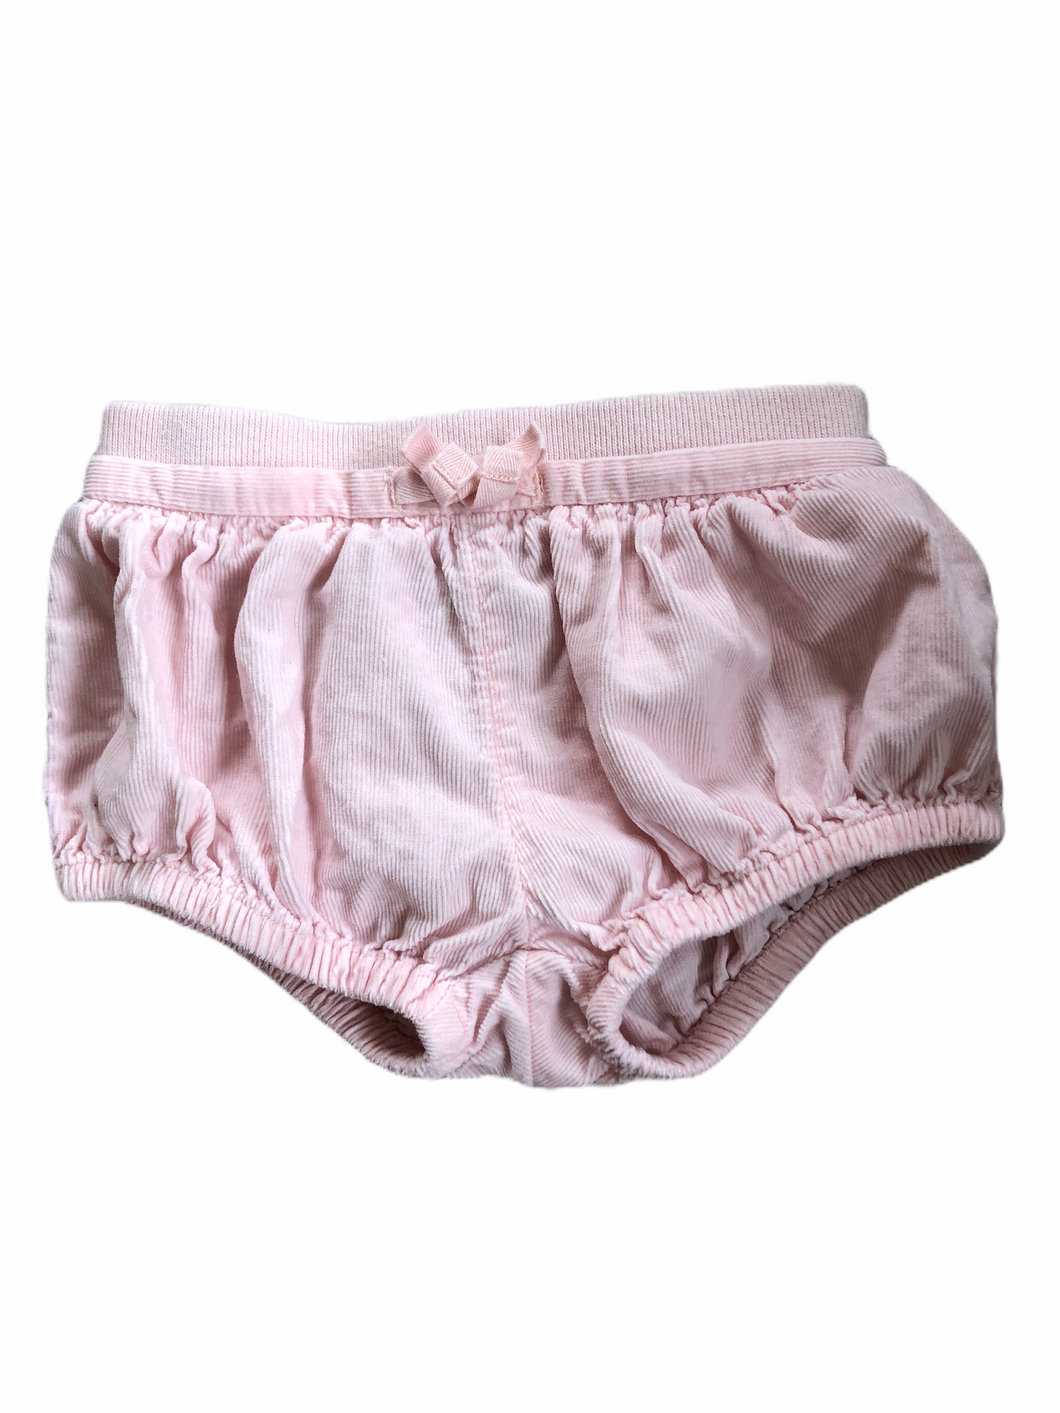 Pink Corduroy Bloomer Shorts, 3-6 months // Gap